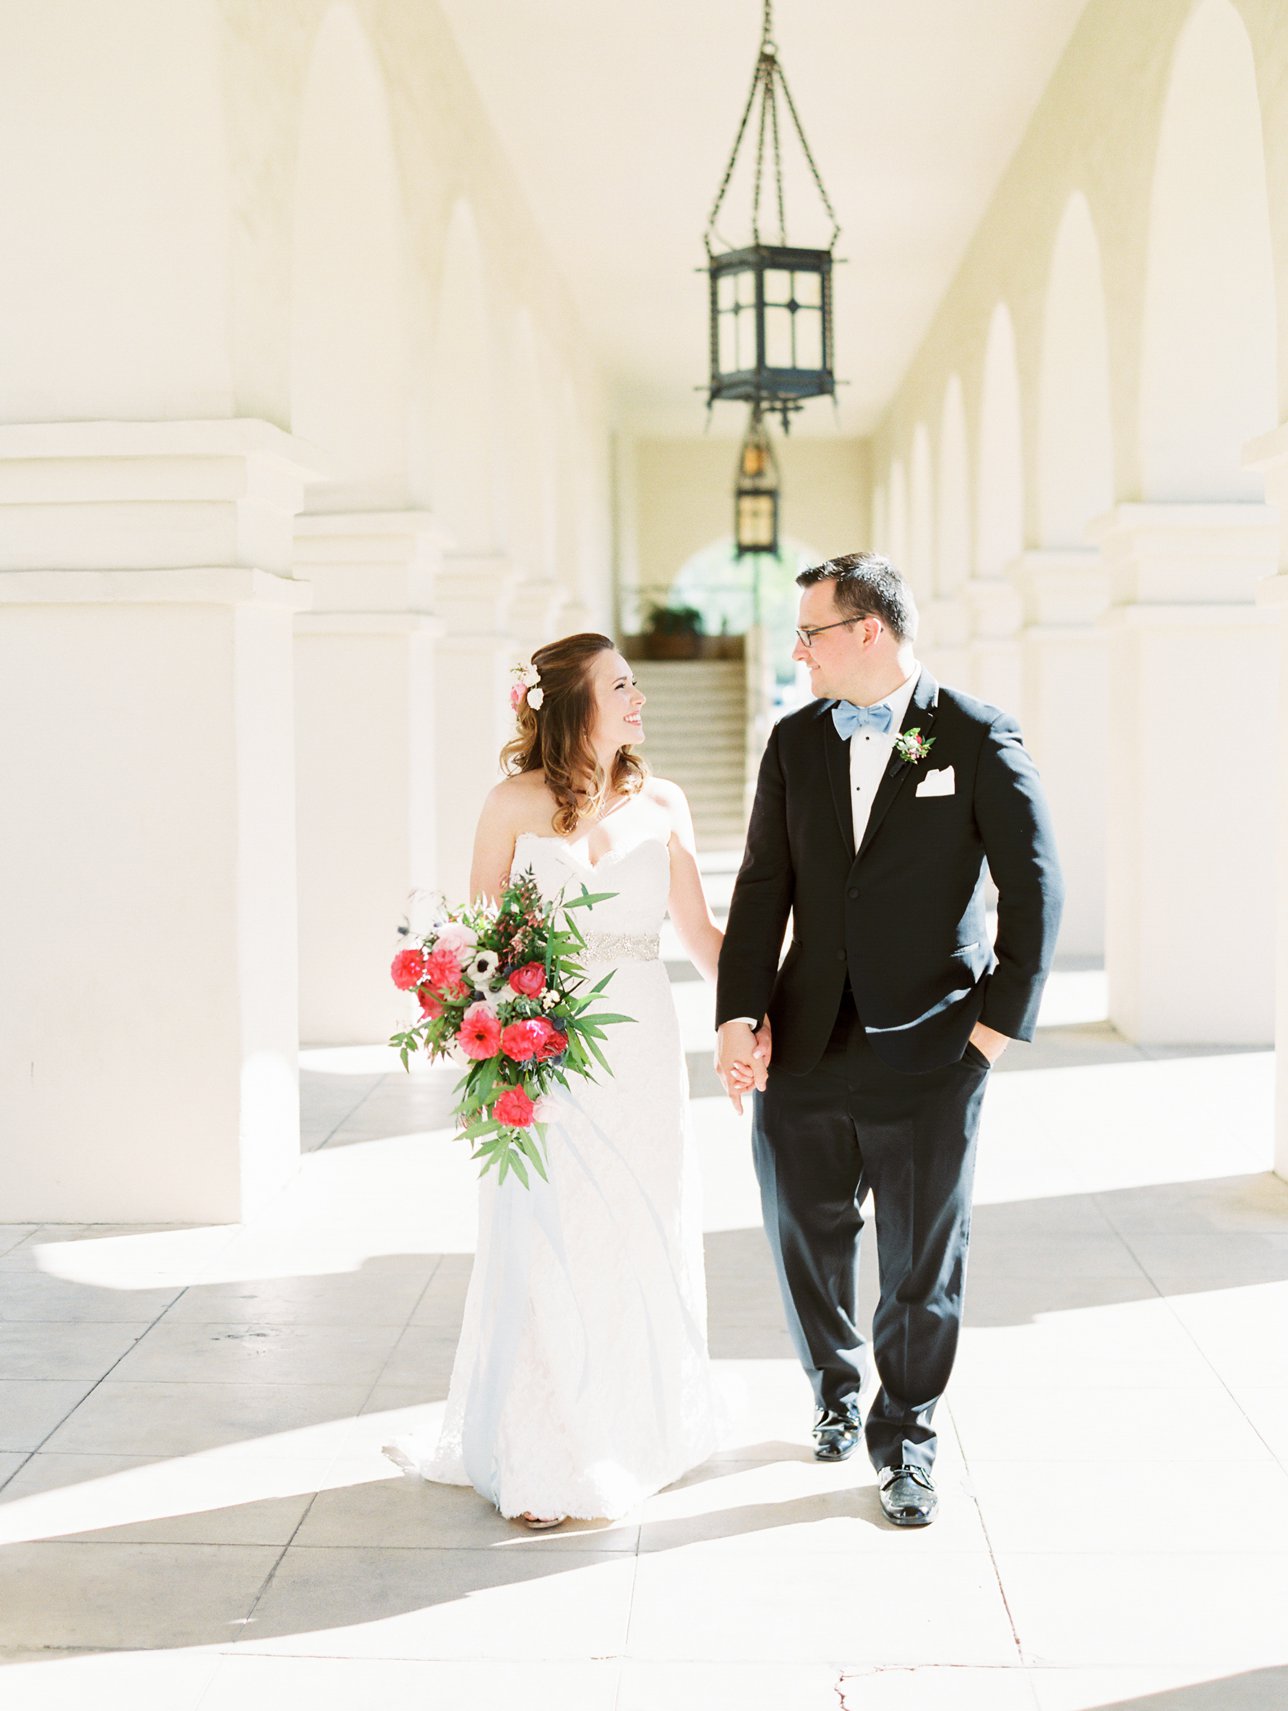 Brophy Chapel wedding photos - Scottsdale Wedding Photographer - Rachel Solomon Photography